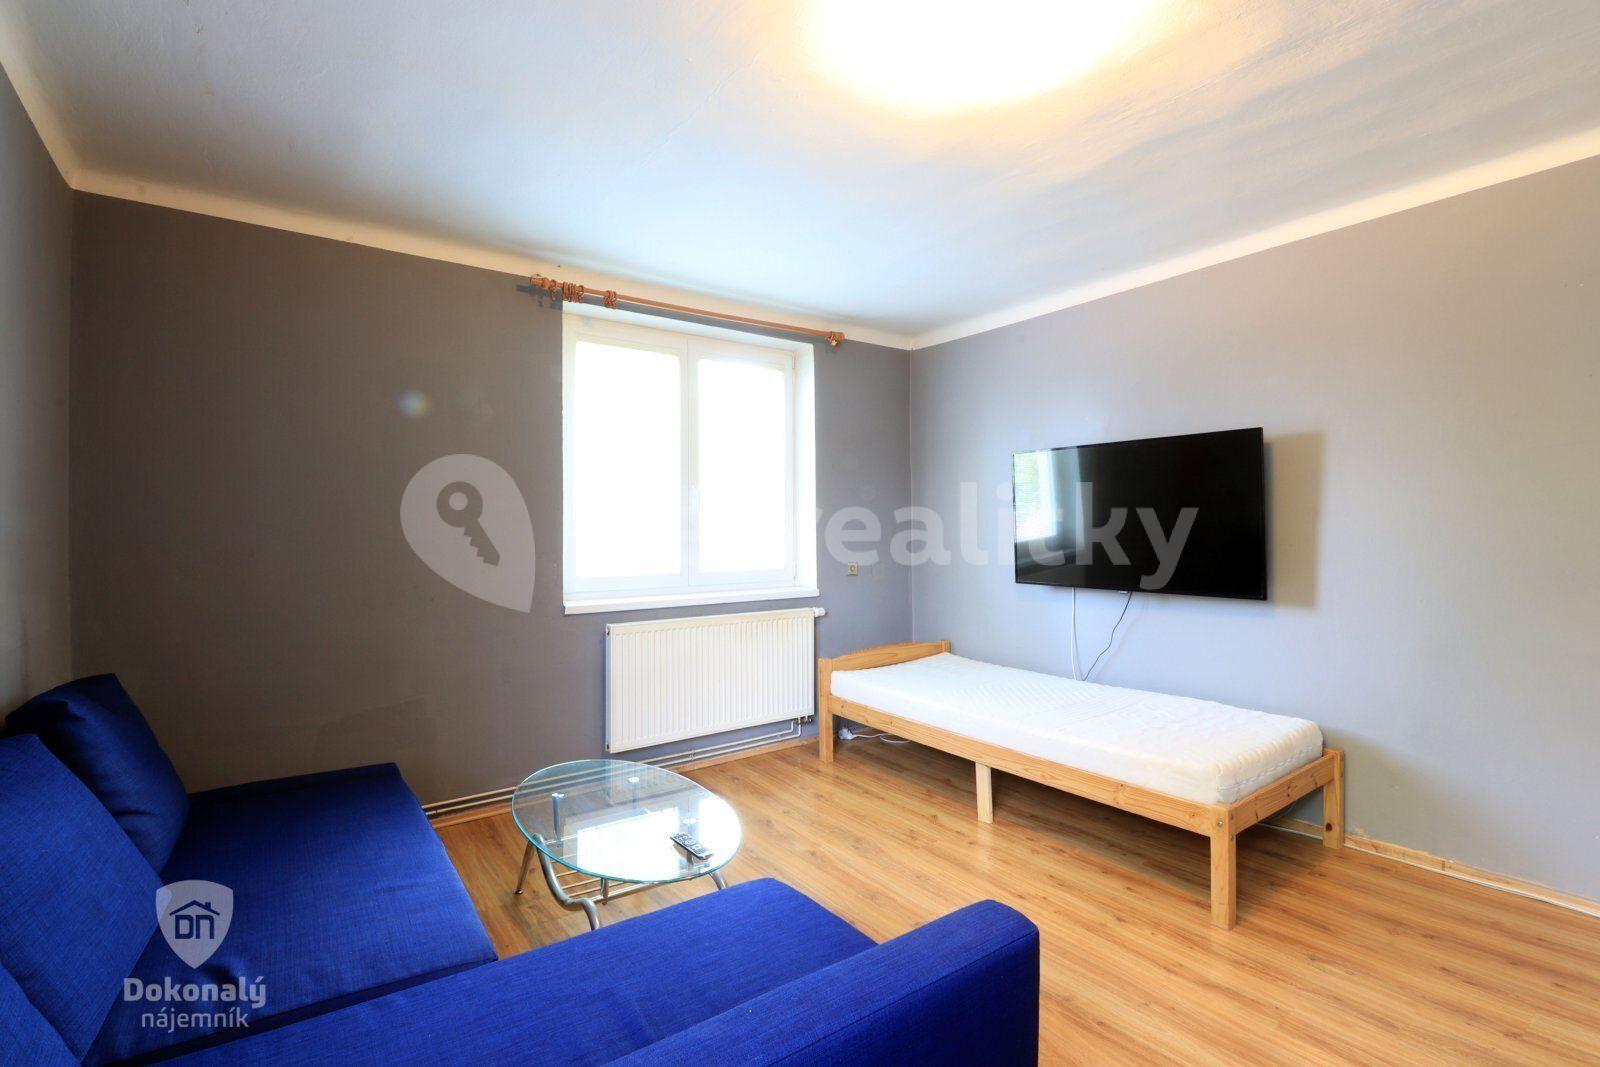 2 bedroom flat to rent, 49 m², K Dolánkám, Český Brod, Středočeský Region